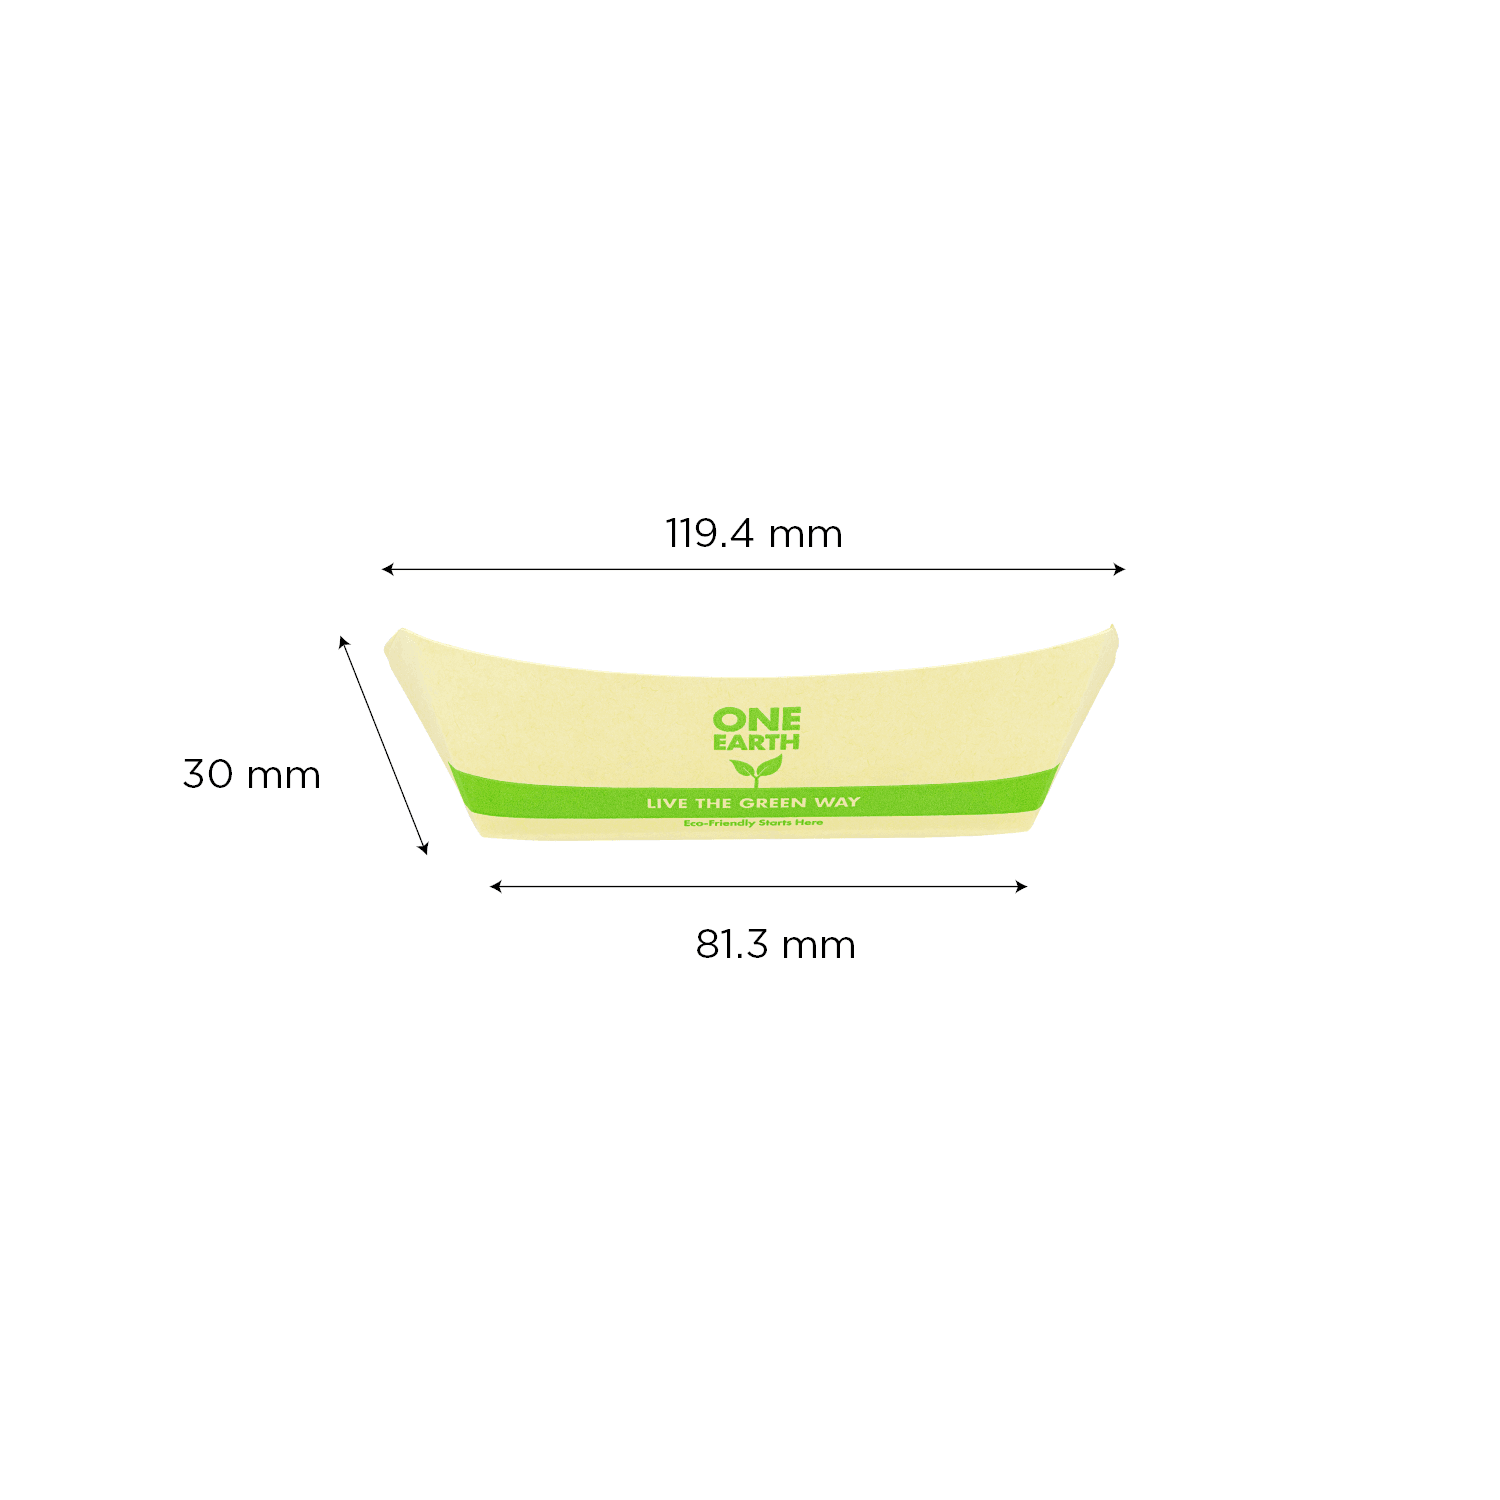 Karat Earth 0.5 lb Bamboo Natural Food Tray dimensions